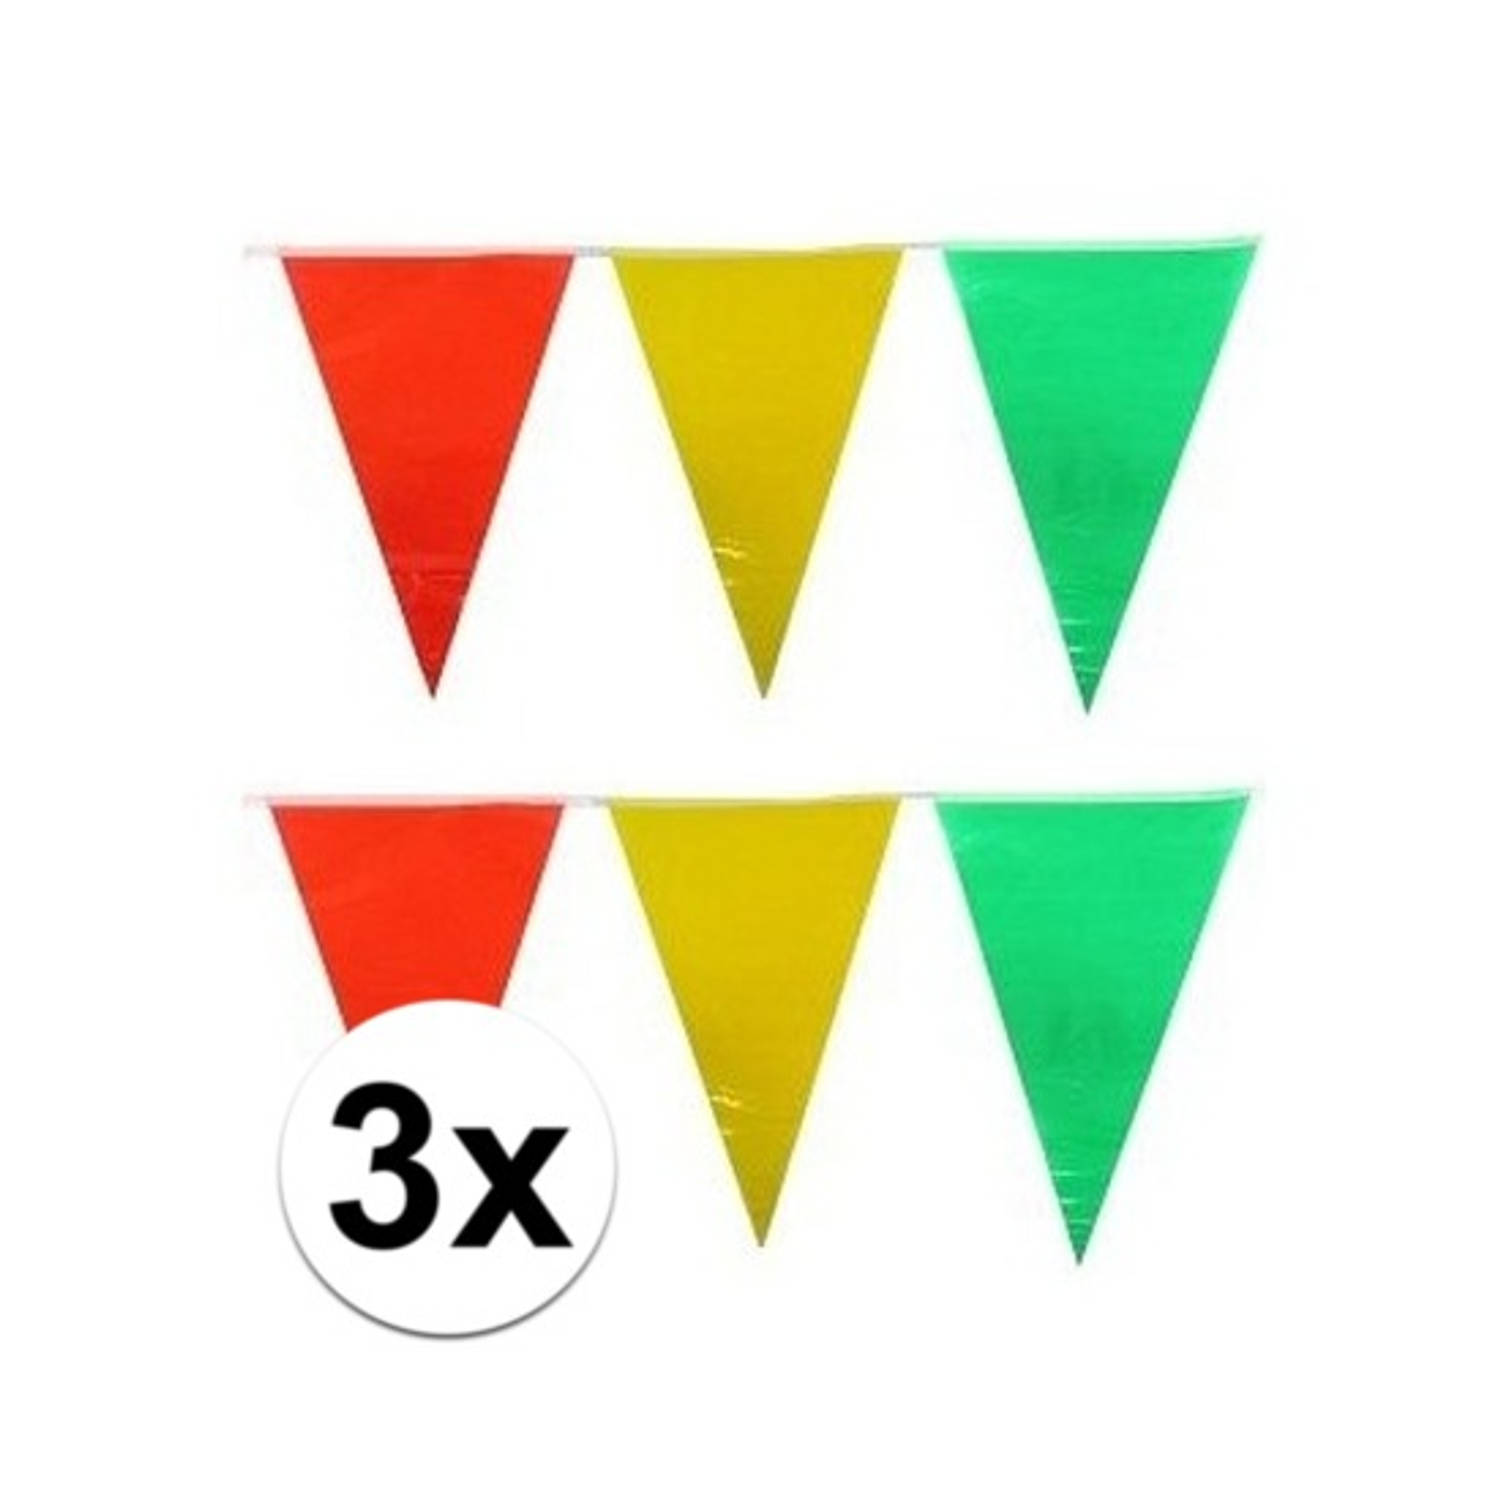 3x Plastic Vlaggenlijn Geel-rood-groen 10 Meter Vlaggenlijnen